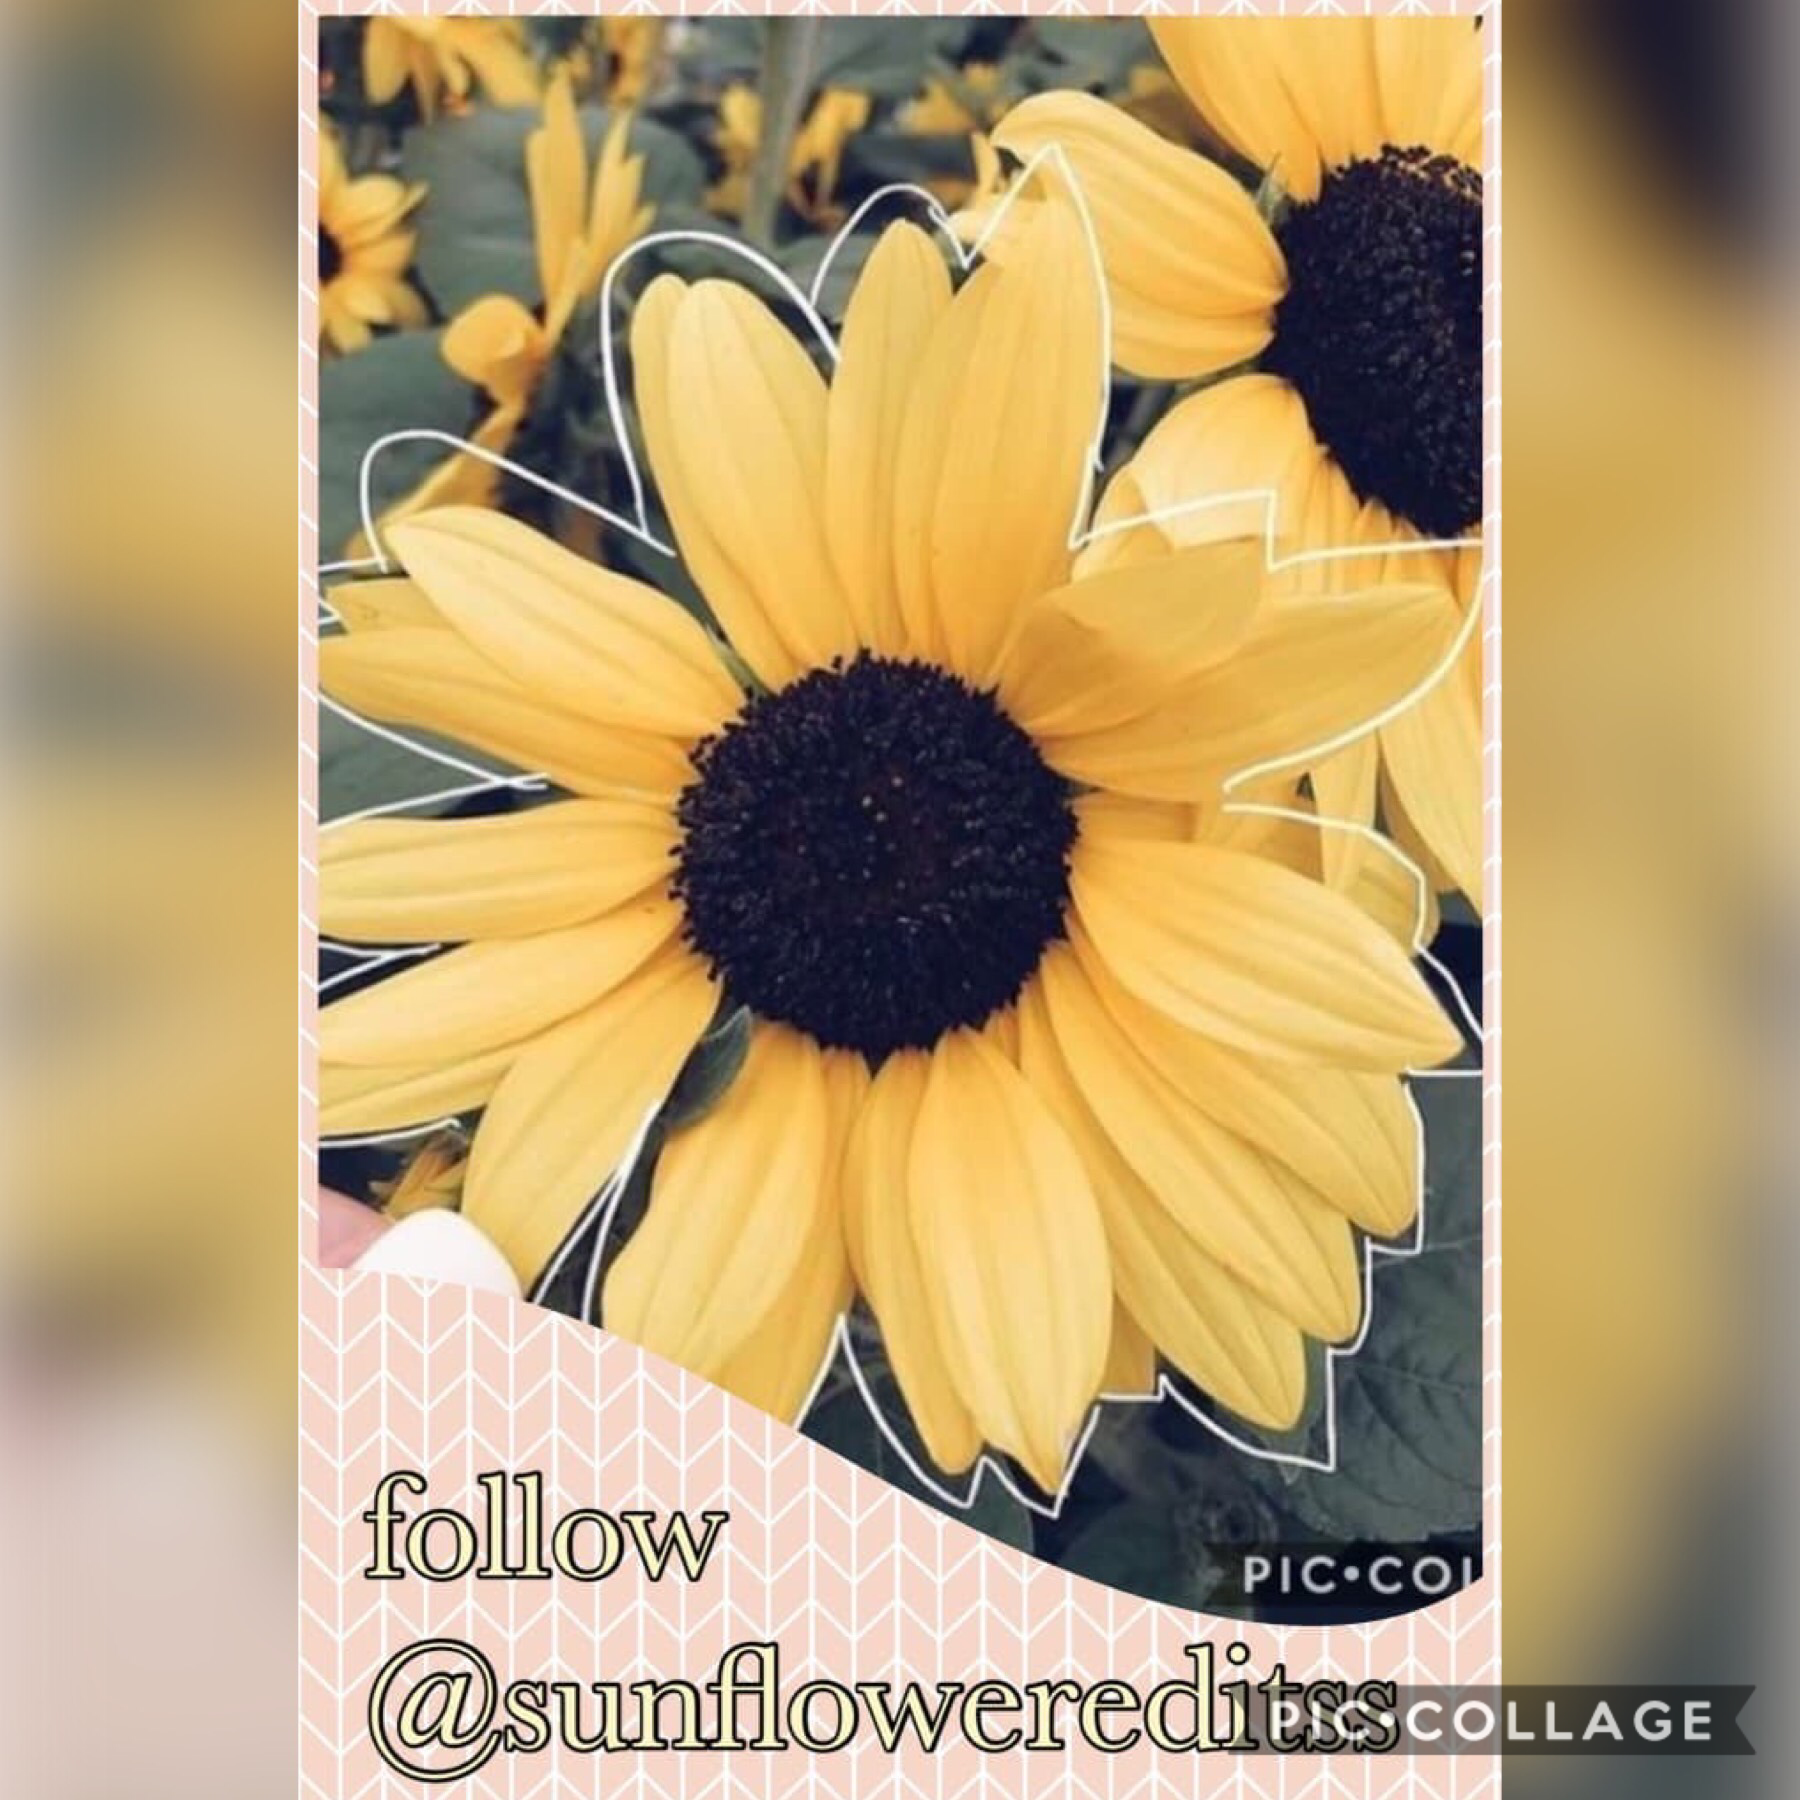 Follow @sunflowereditsss